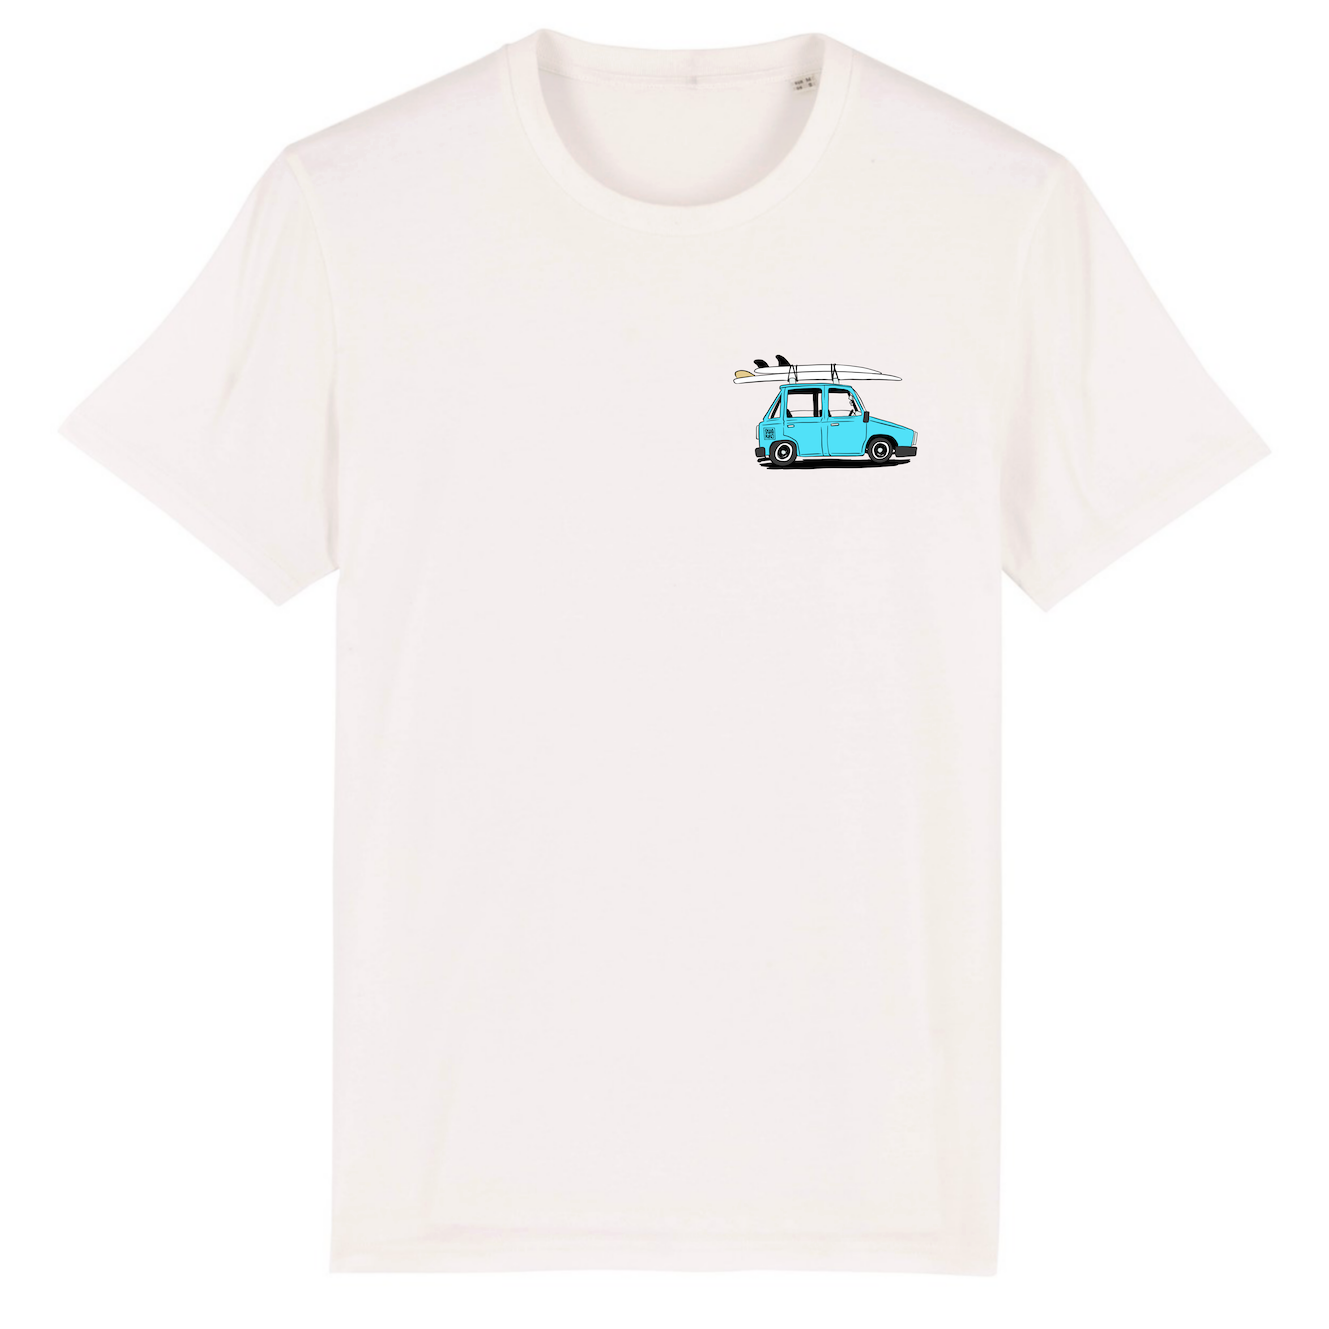 Wit T-shirts met borstprint van een auto met Swakiko sticker en twee surfbaords op het dak en 